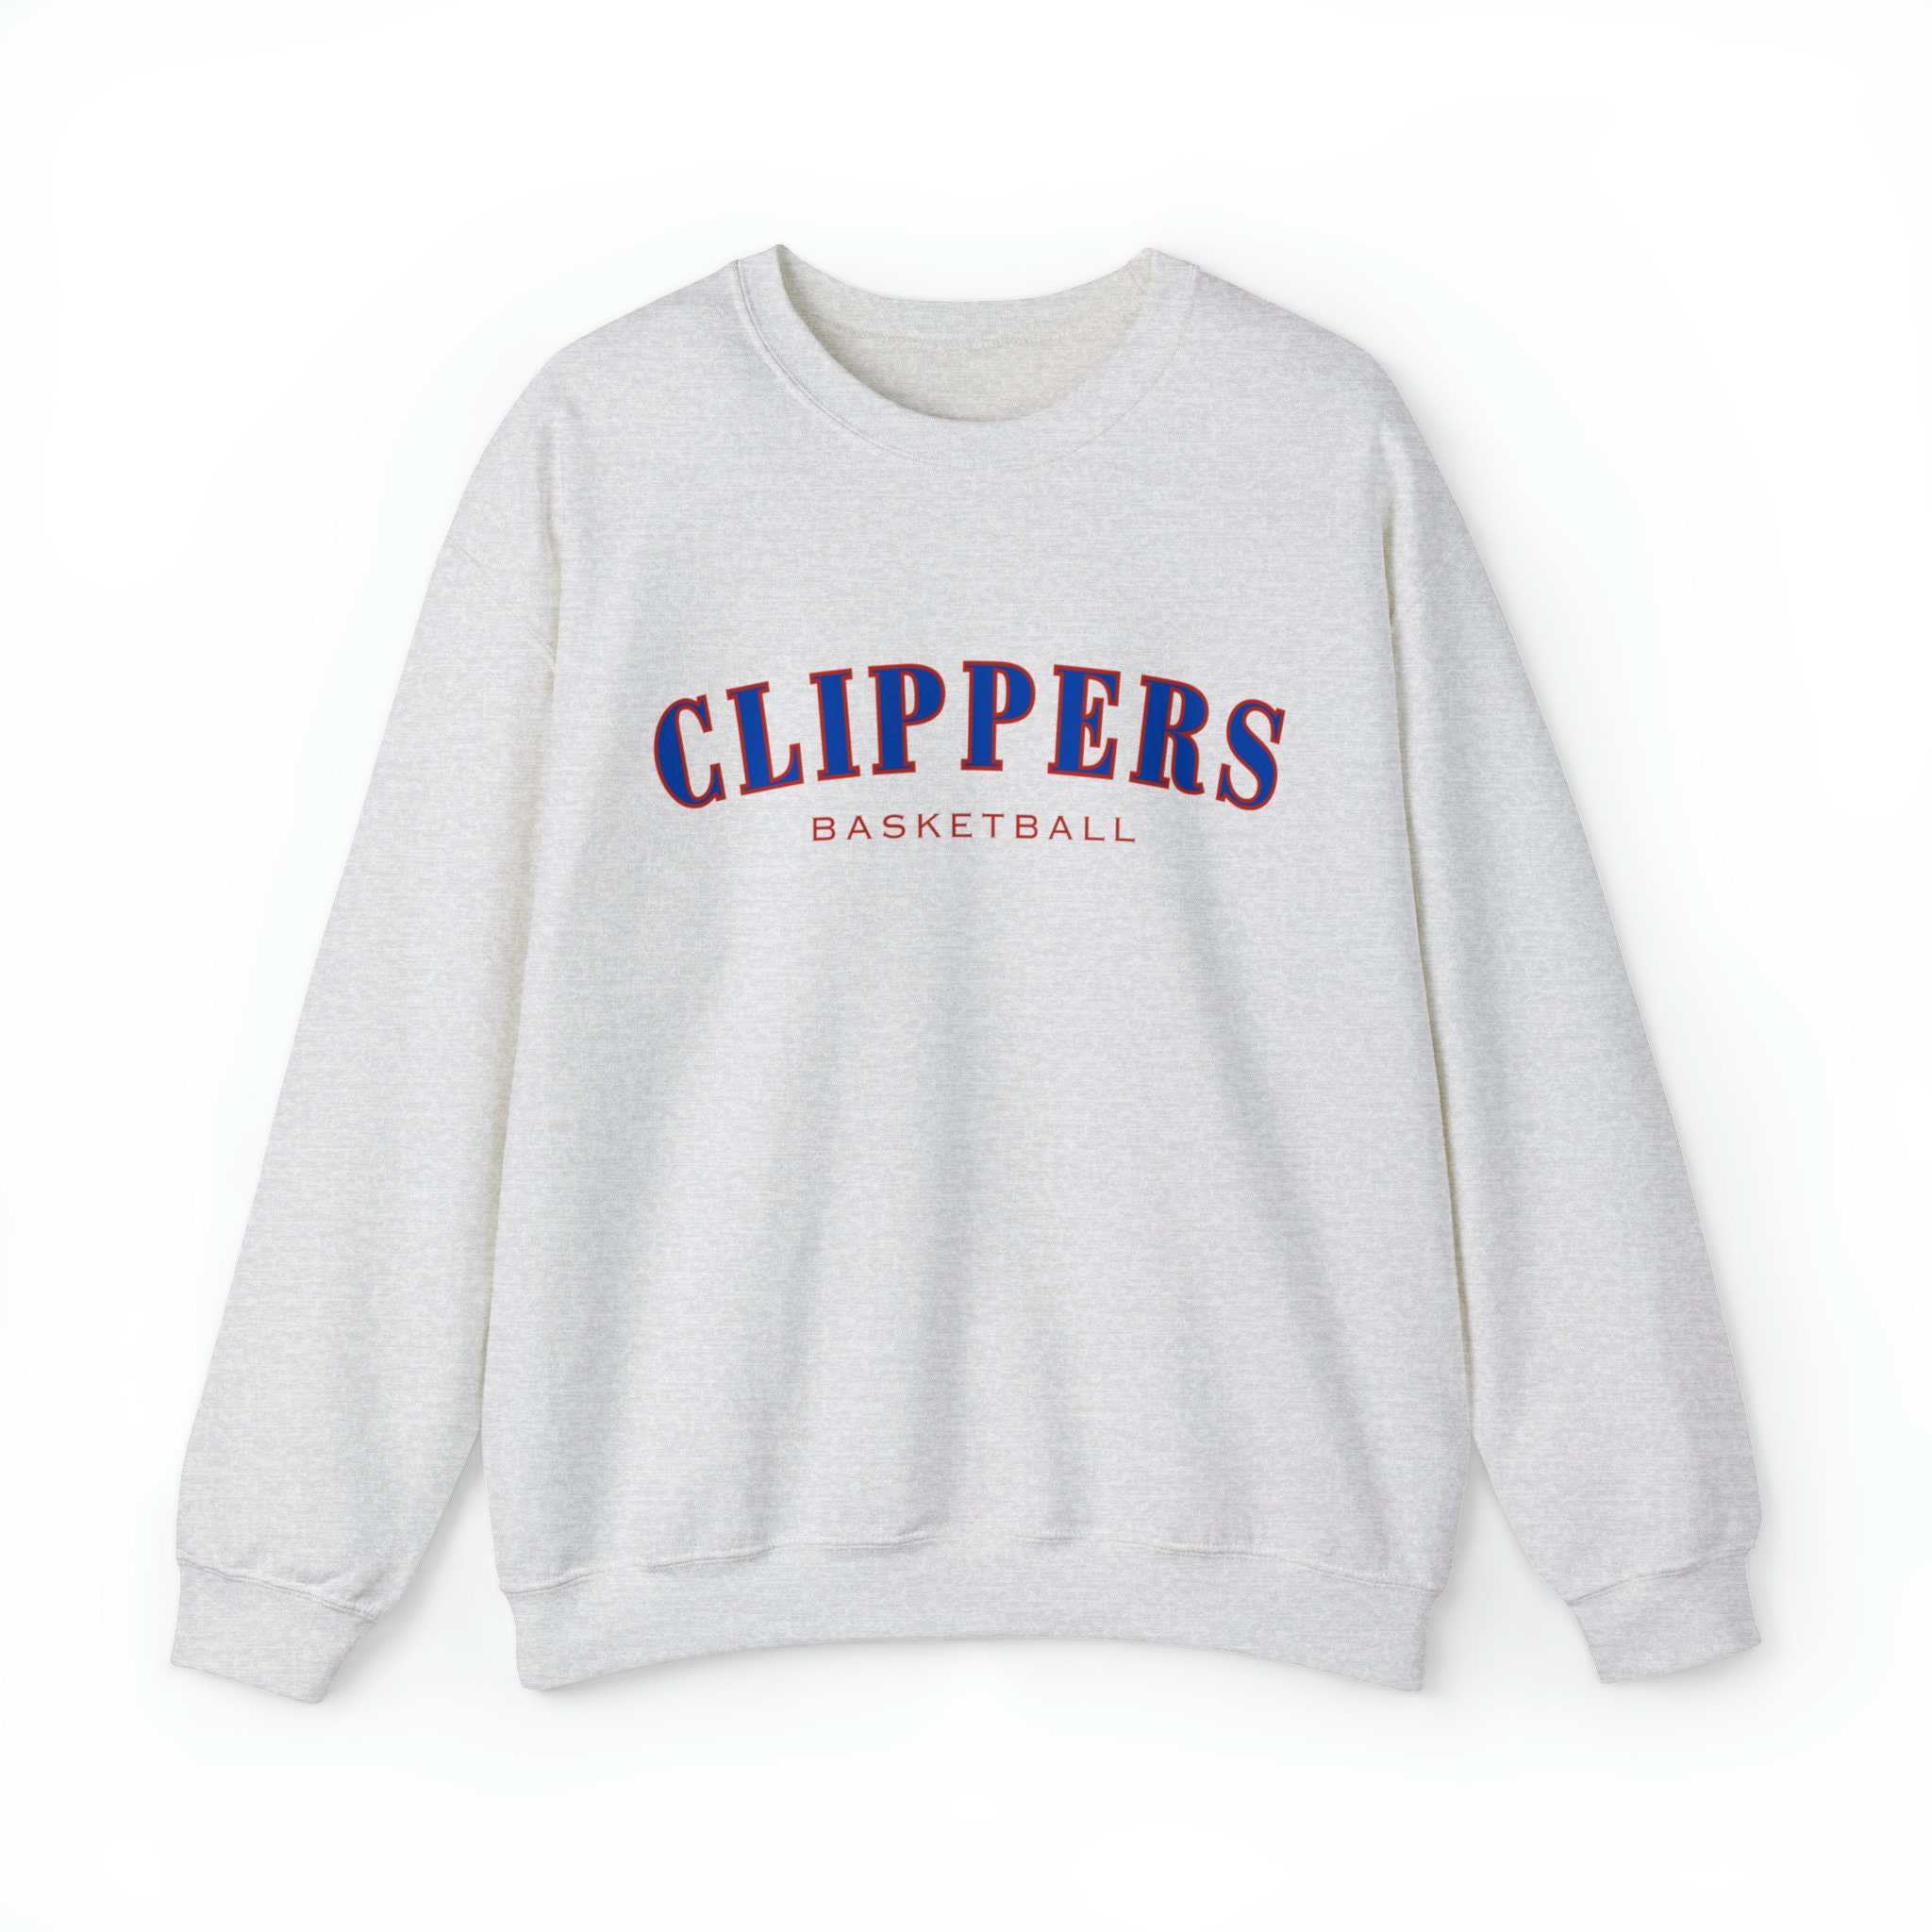 Los Angeles Clippers Sweater Spray Paint Tye Dye Sweater -  Sweden